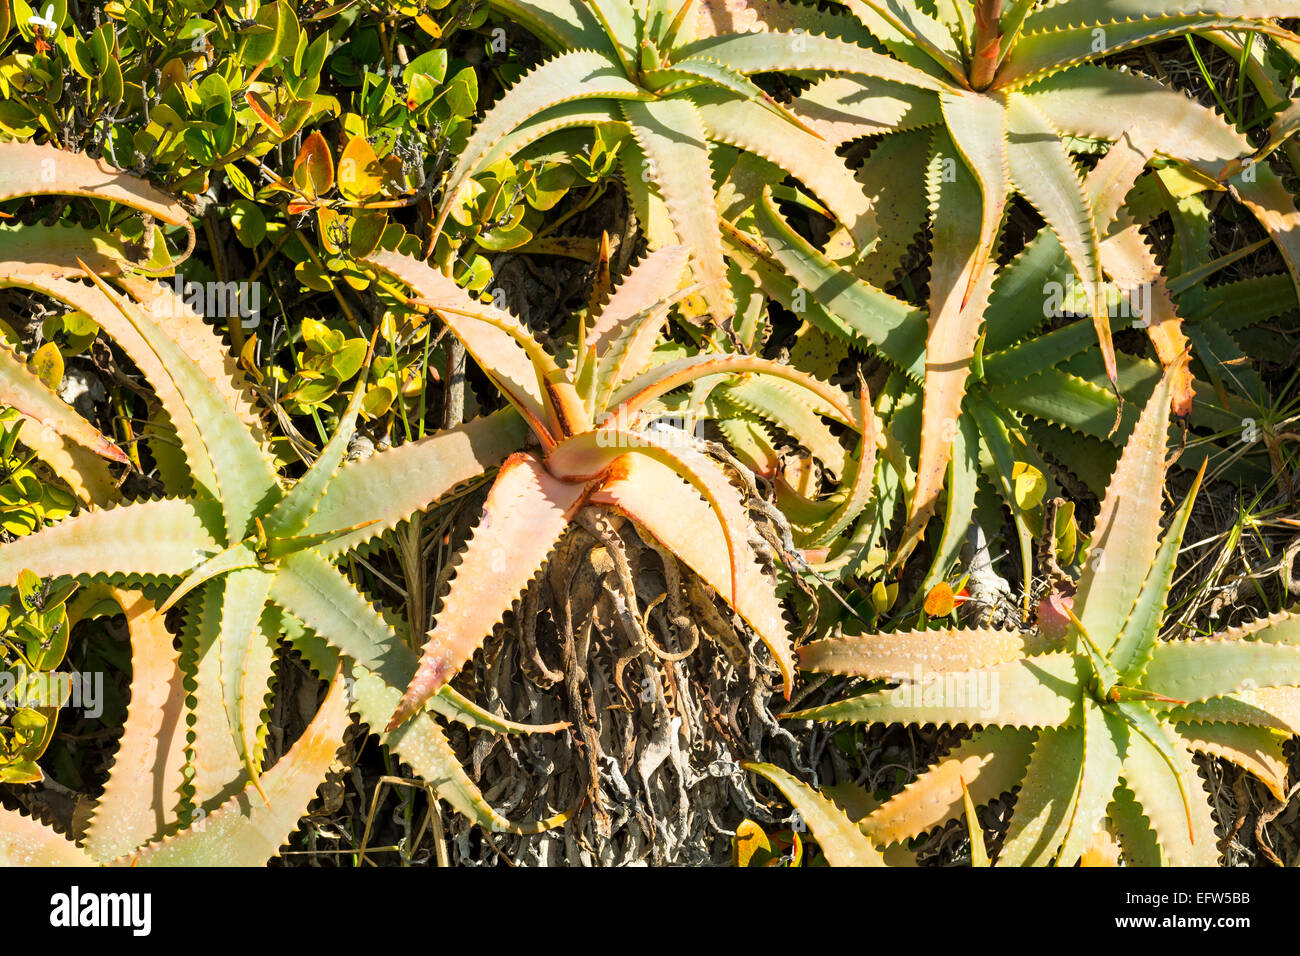 Ein Beet voller Kräuter Aloe Vera Kaktus Sukkulenten an sonnigen, hellen Tag. Stockfoto